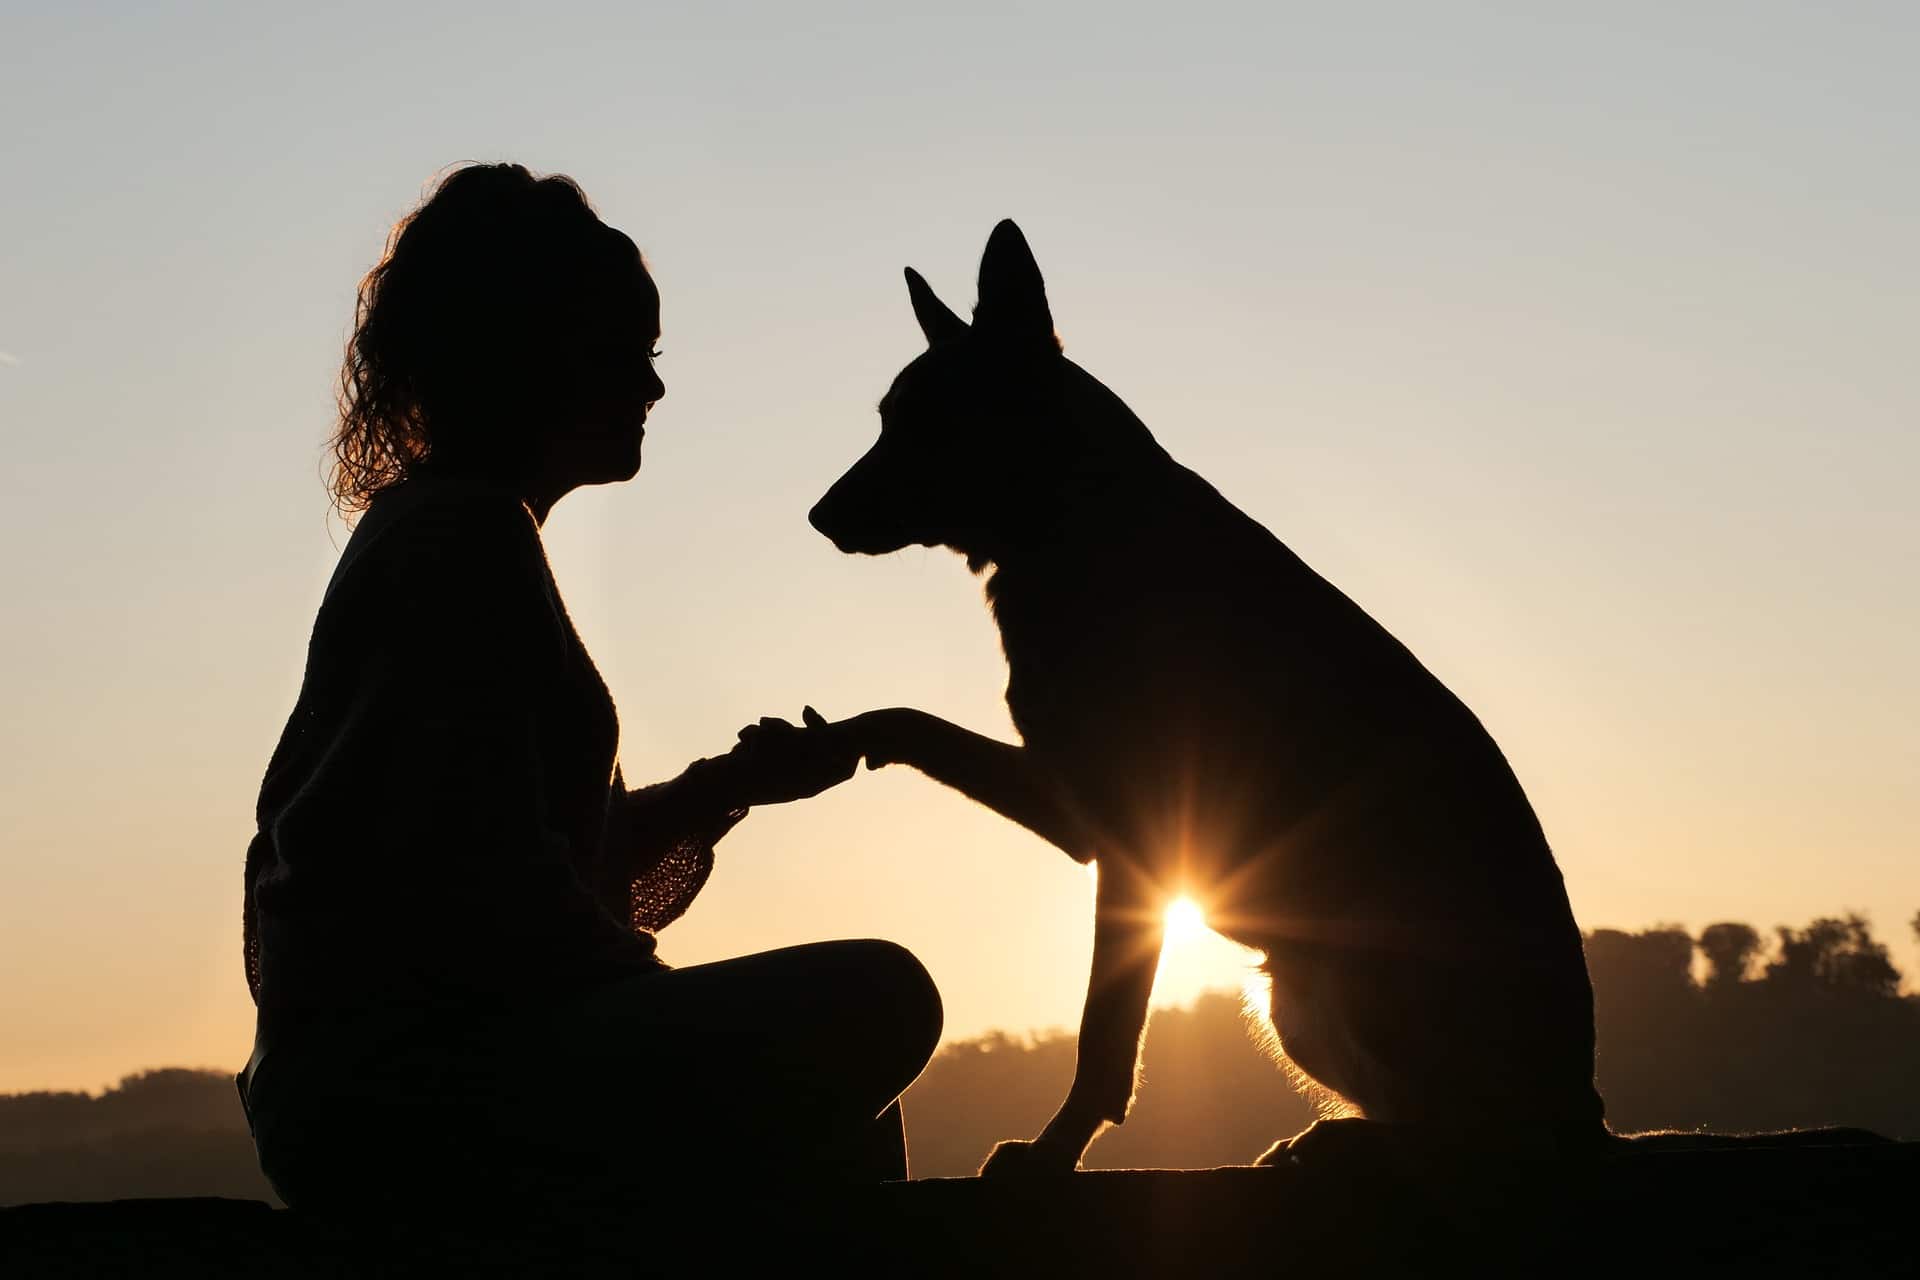 Menschenfreund auf vier Pfoten - sind Hunde gut für die Gesundheit. Hund und Frau vorm Sonnenuntergang - tiefe Freundschaft zwischen Mensch und Tier. /Foto: lokalsportessen (pixabay)